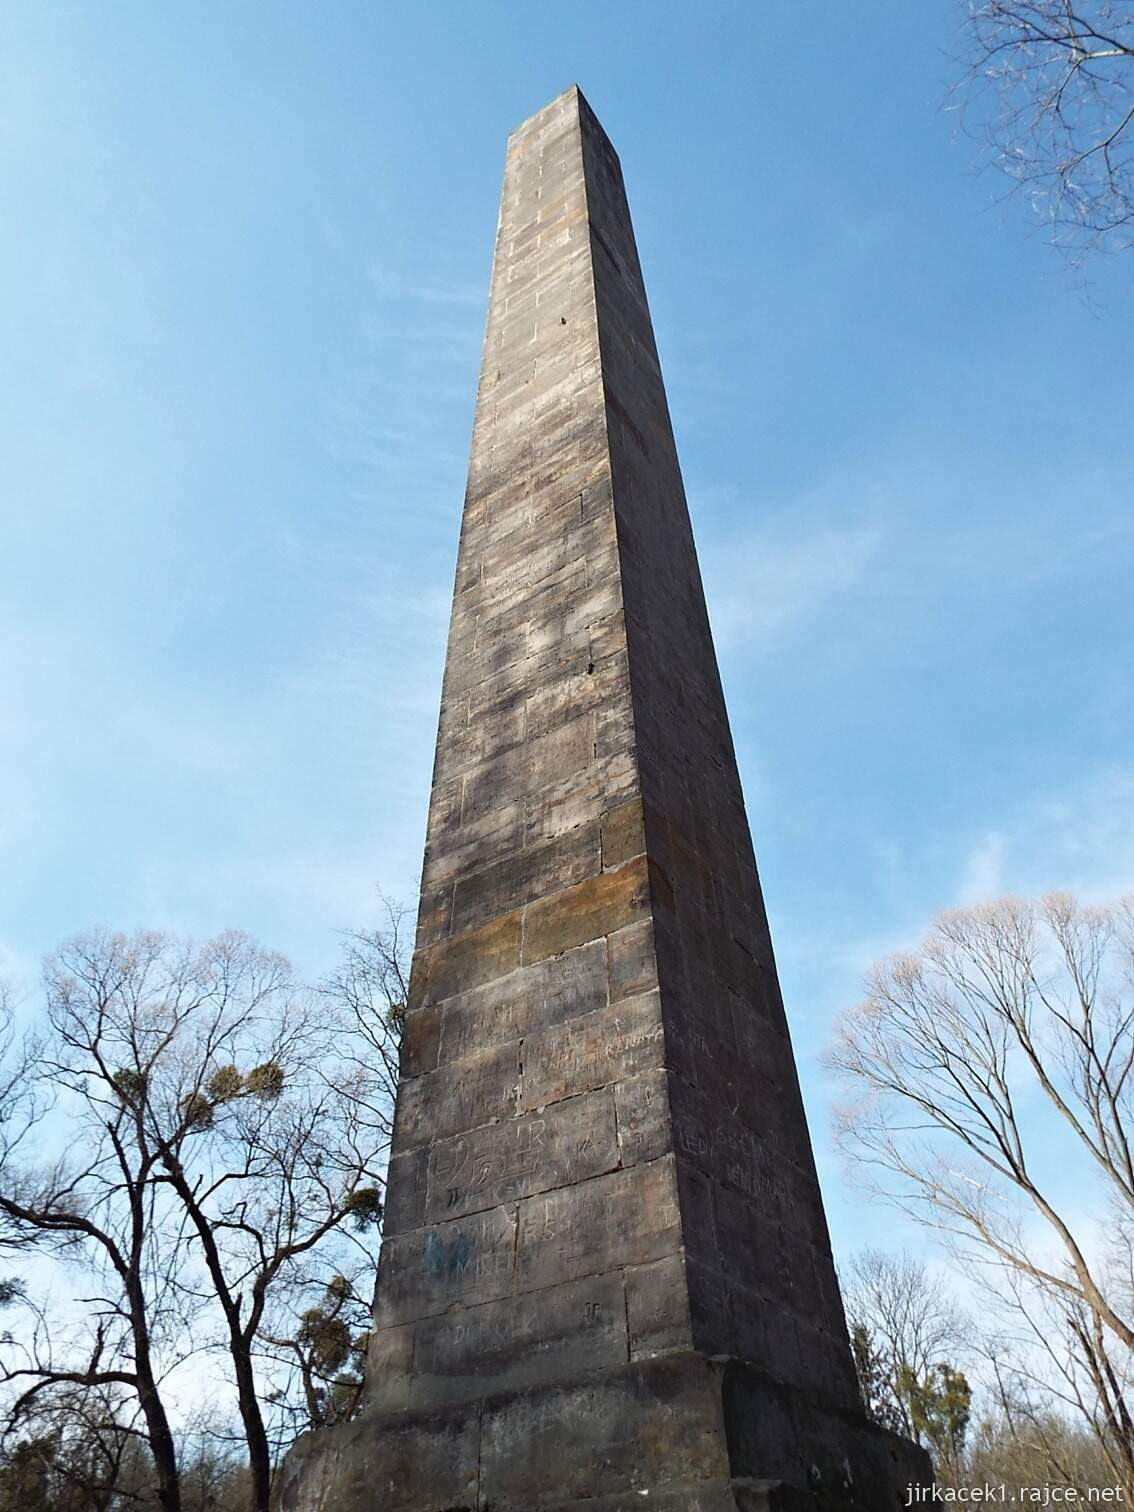 D - cesta z Nových Mlýnů k Obelisku 51 - Obelisk